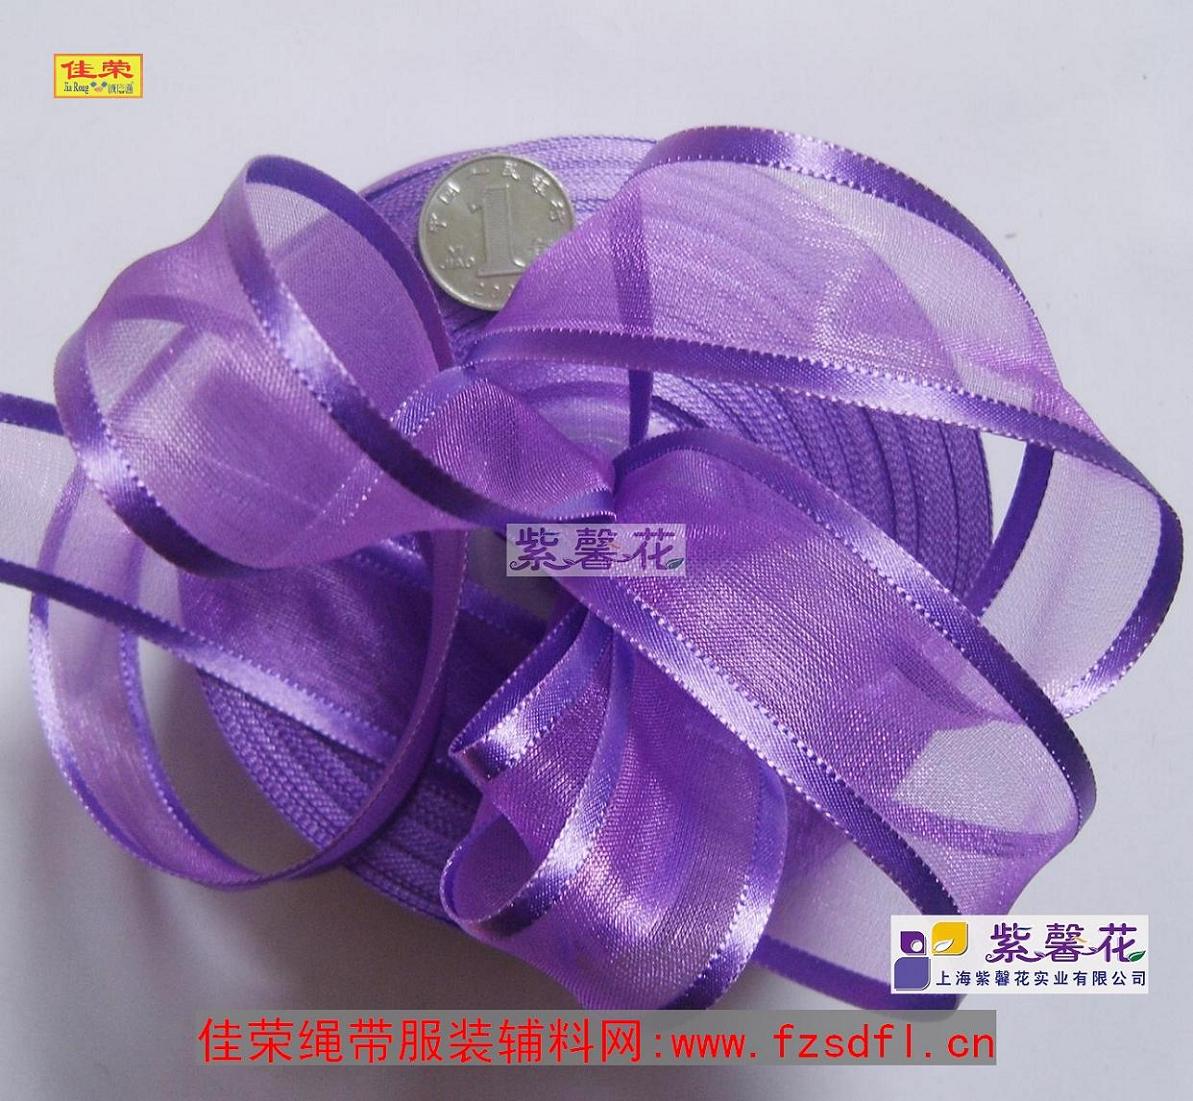 Веревка Huizhou Jiarong с вспомогательным материалом пурпурная цветочная одежда Вспомогательные материалы. Фиброзное шелковое края с Taobao Shop //www.fzsdfl.cn/